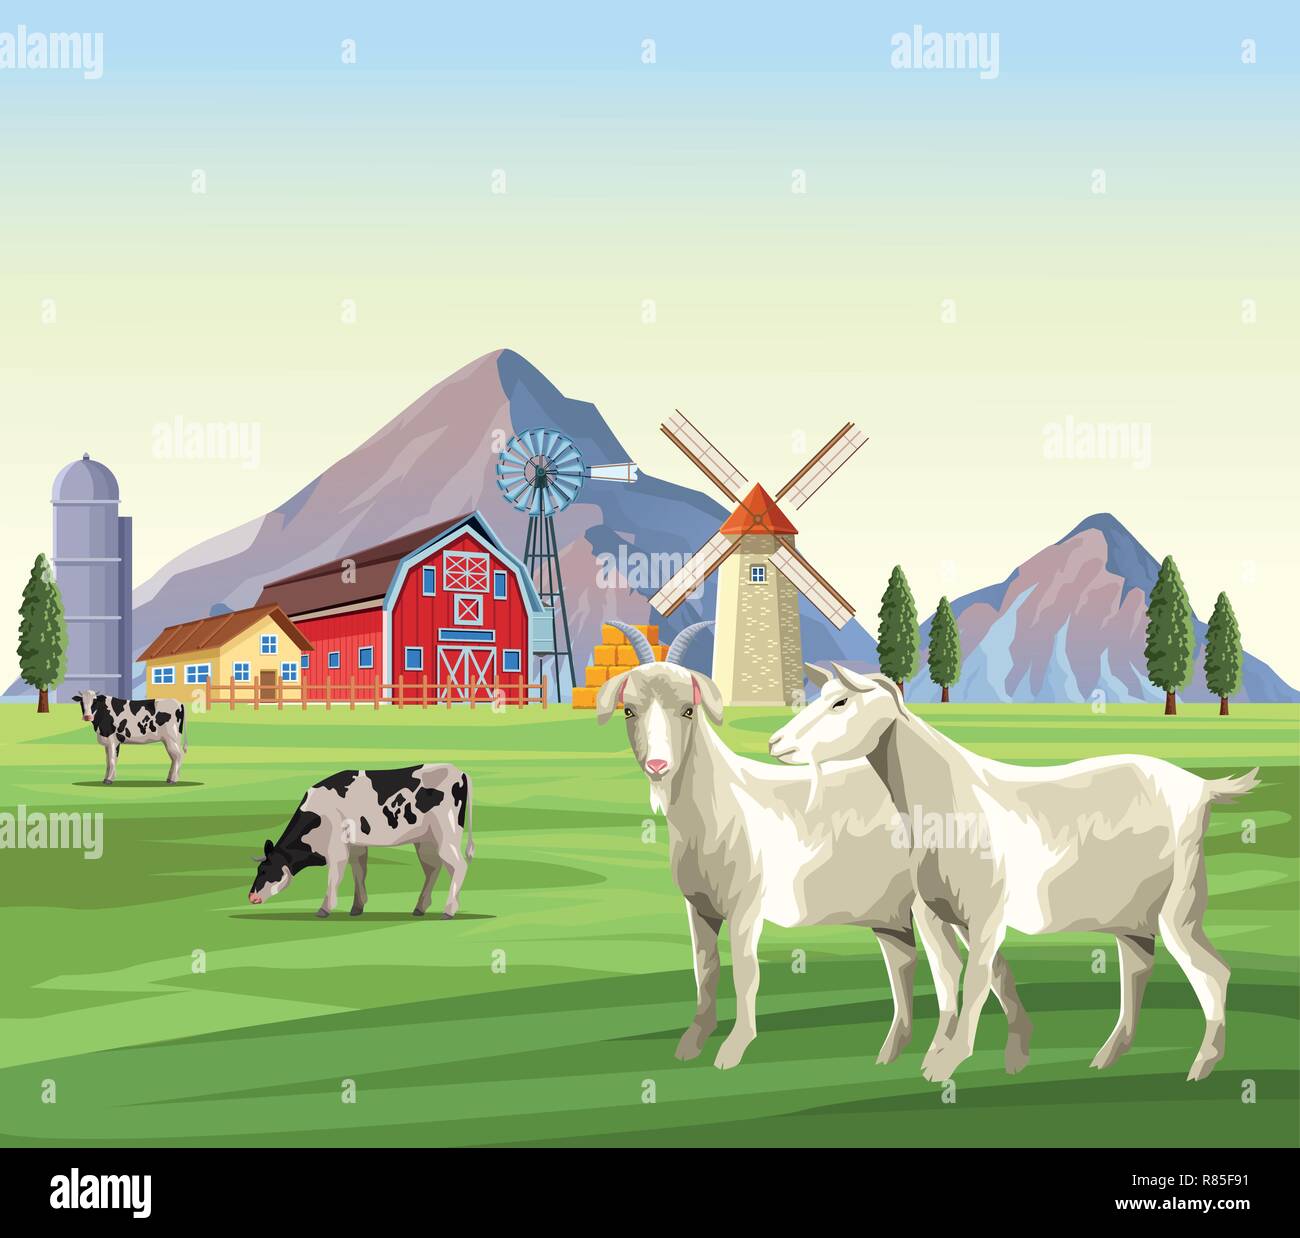 Gli animali della fattoria cartoni animati Immagine e Vettoriale - Alamy